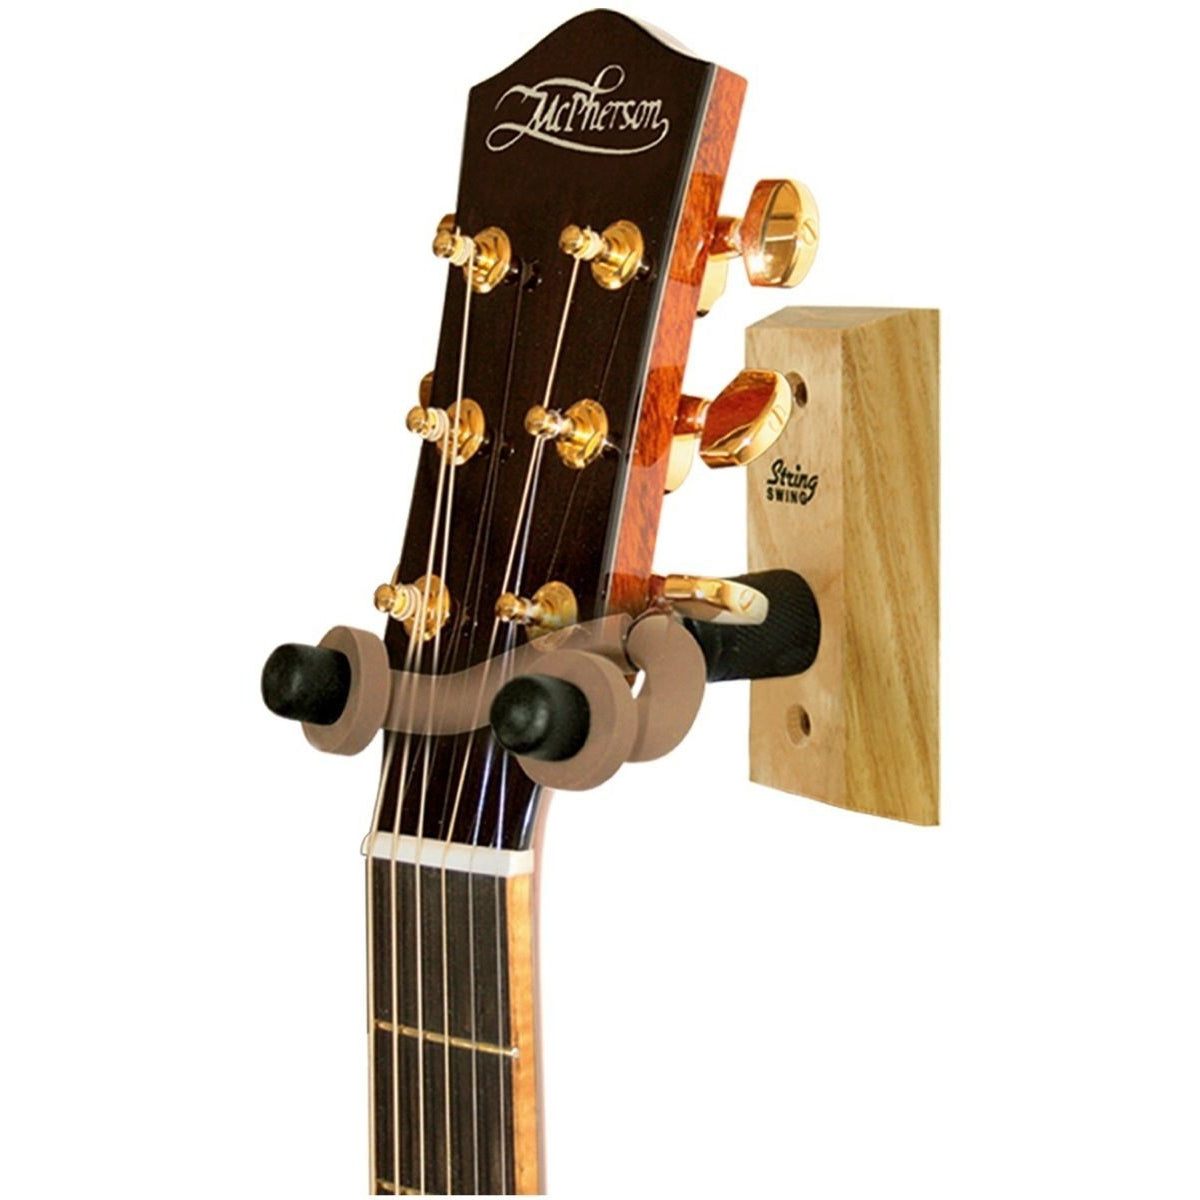 String Swing CC01O Home Guitar Hanger